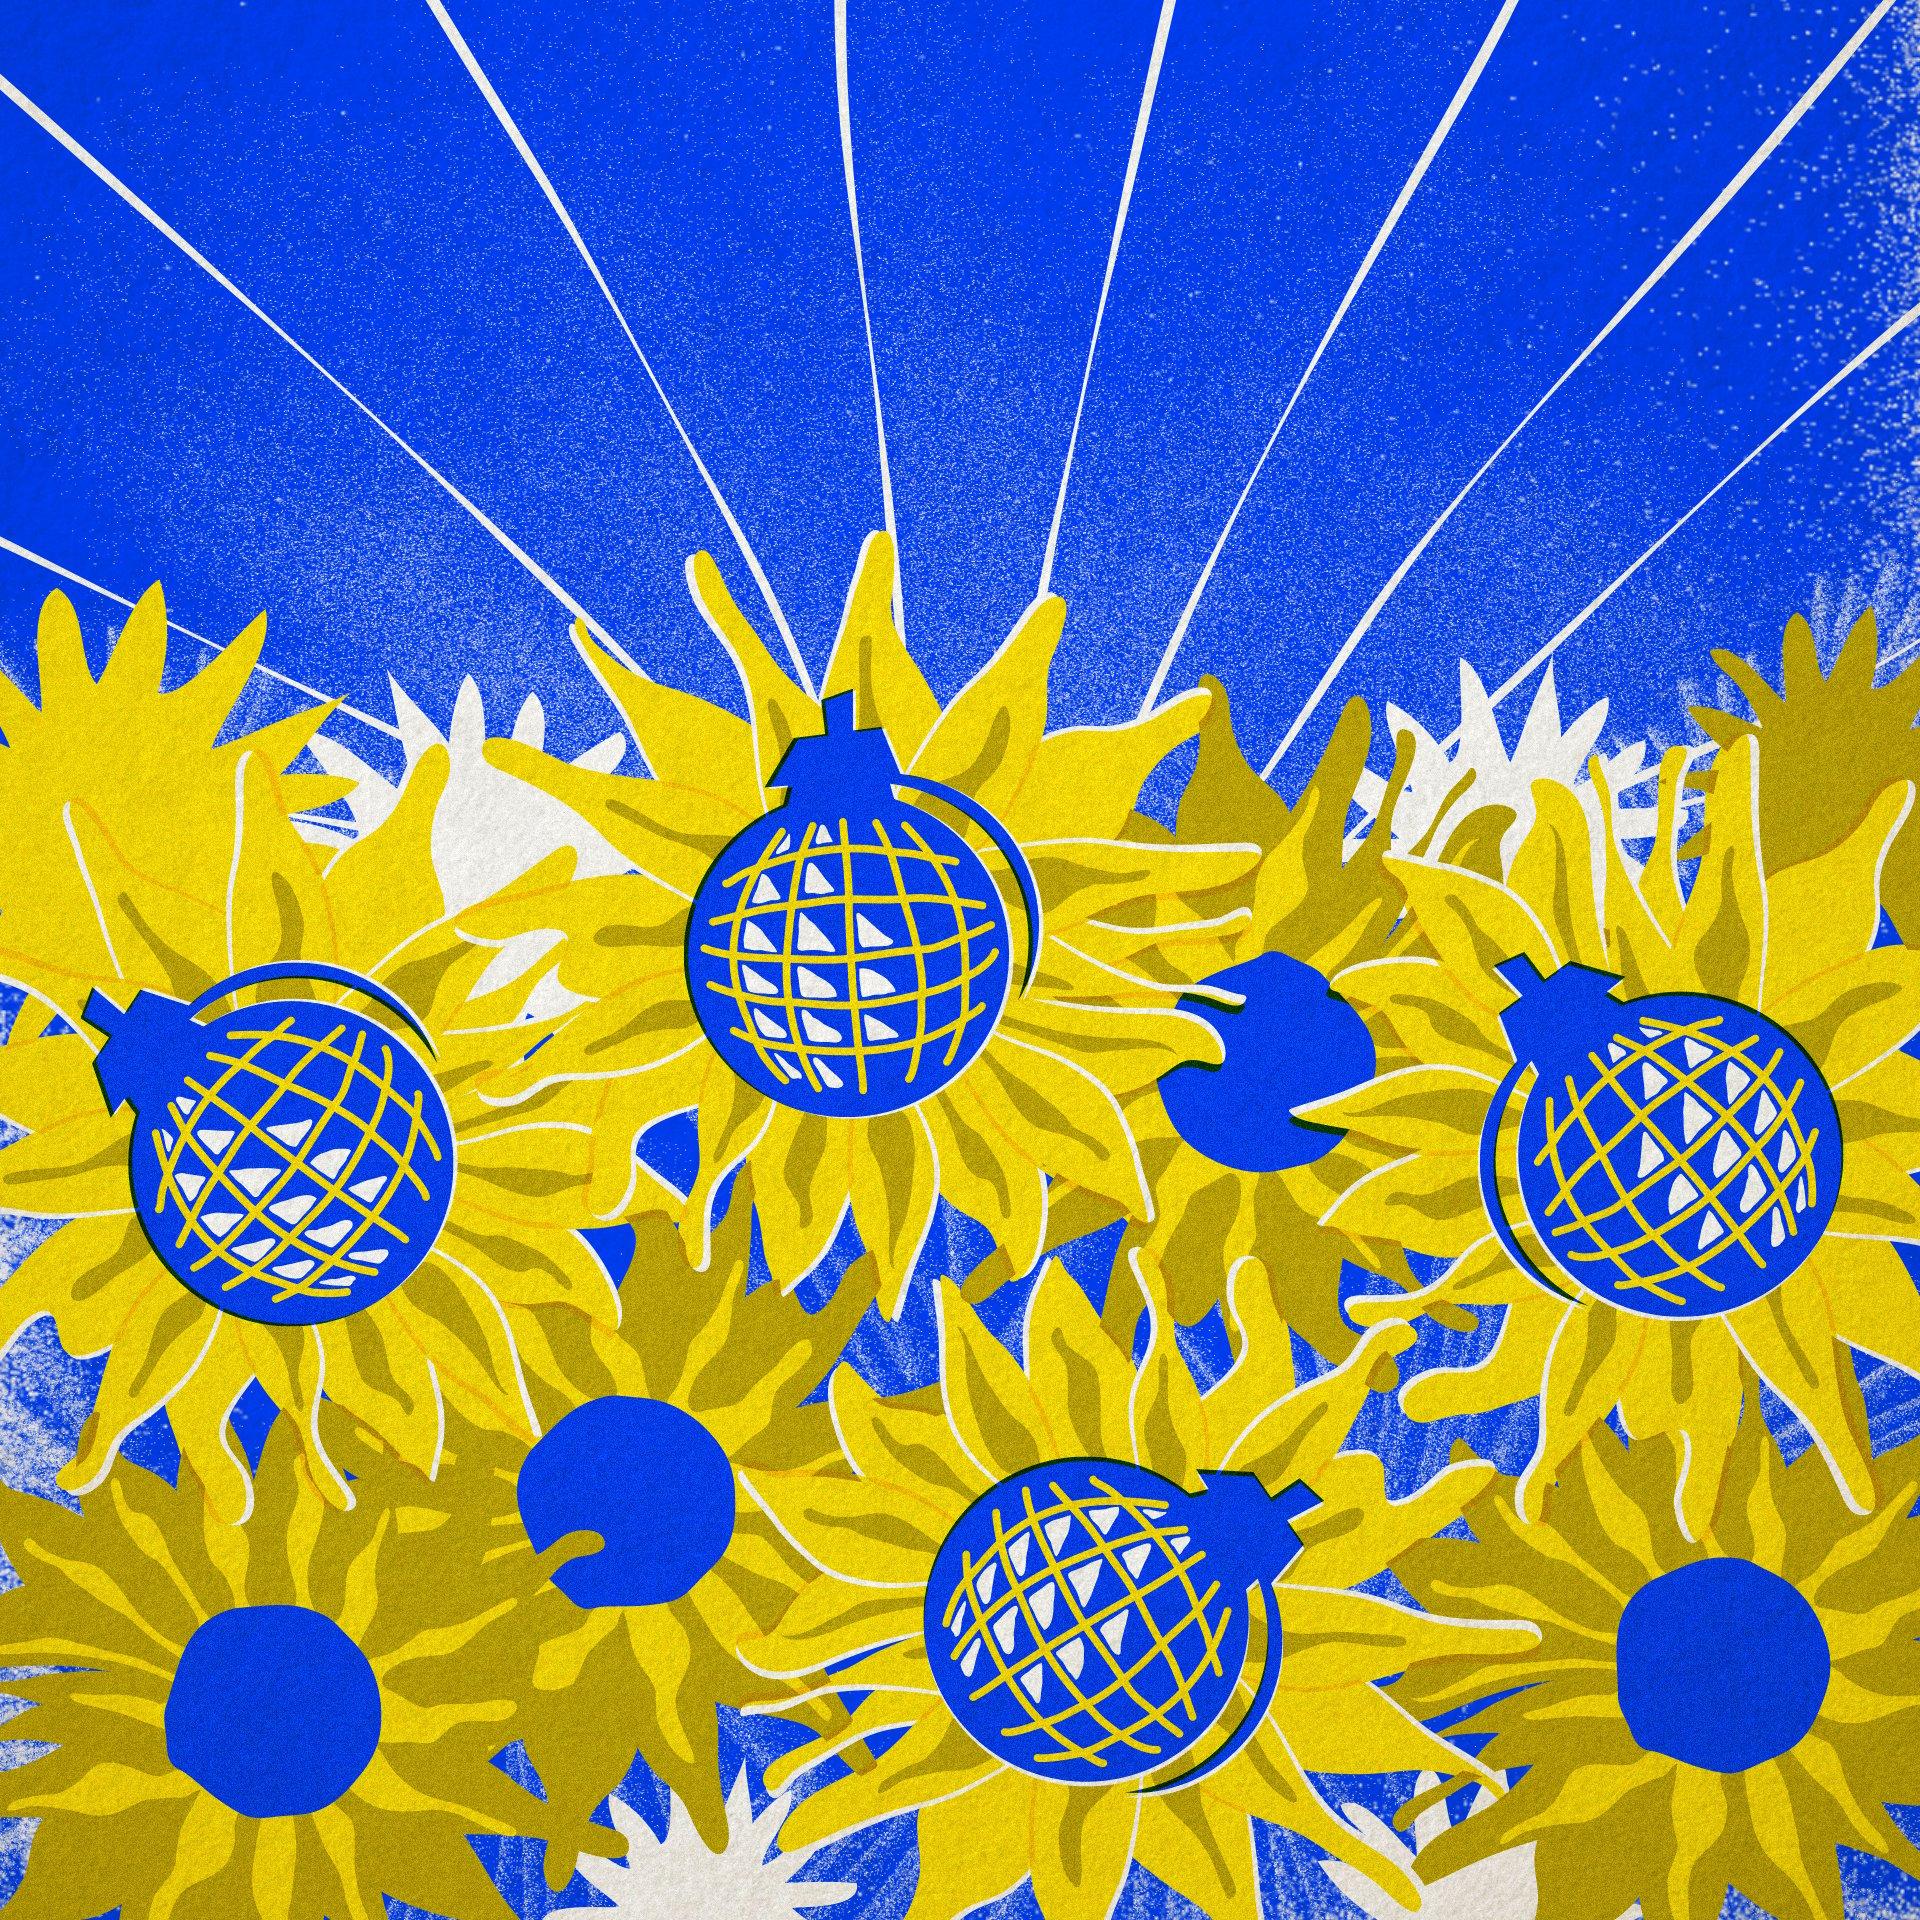 Grafika. Na tle niebieskiego nieba - zołte słoneczniki (barwy Ukrainy). Słoneczniki mają środki z niebieskich bomb